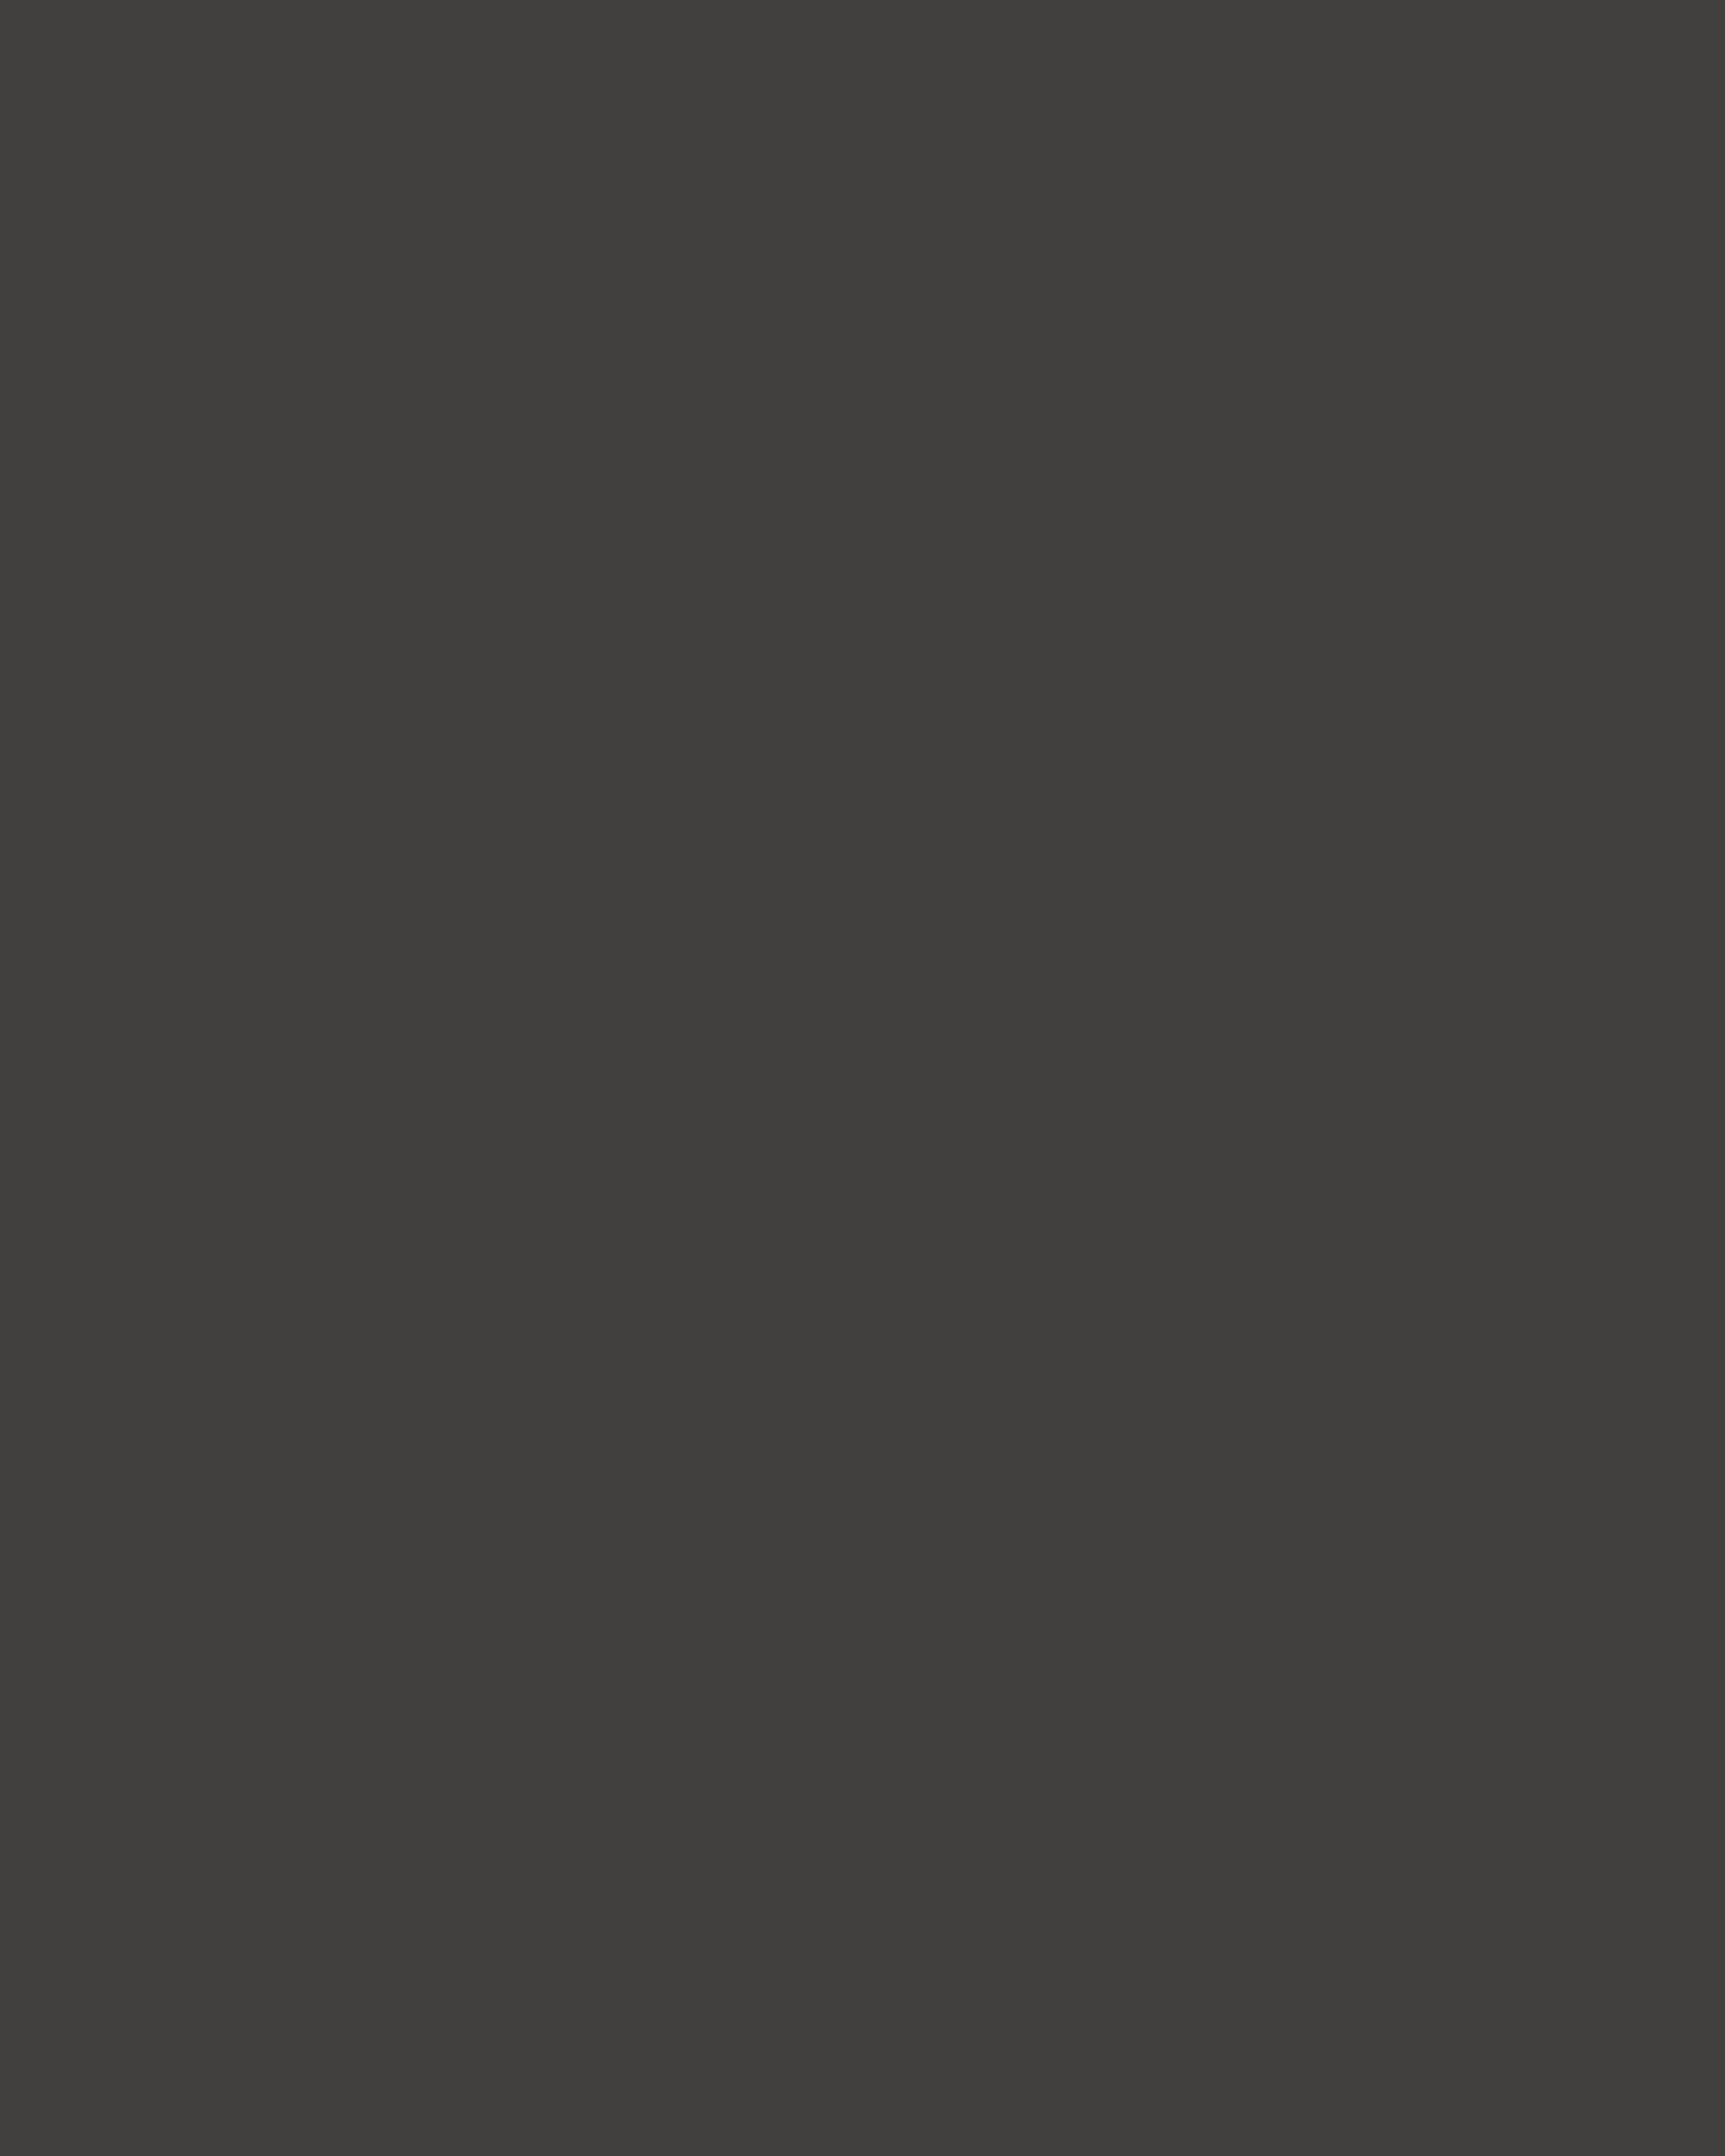 Царь-фонарь. Владимиро-Суздальский музей-заповедник, Суздаль, Владимирская область, 1968 год. Фотография: Виктор Великжанин, Петр Носов / Фотохроника ТАСС